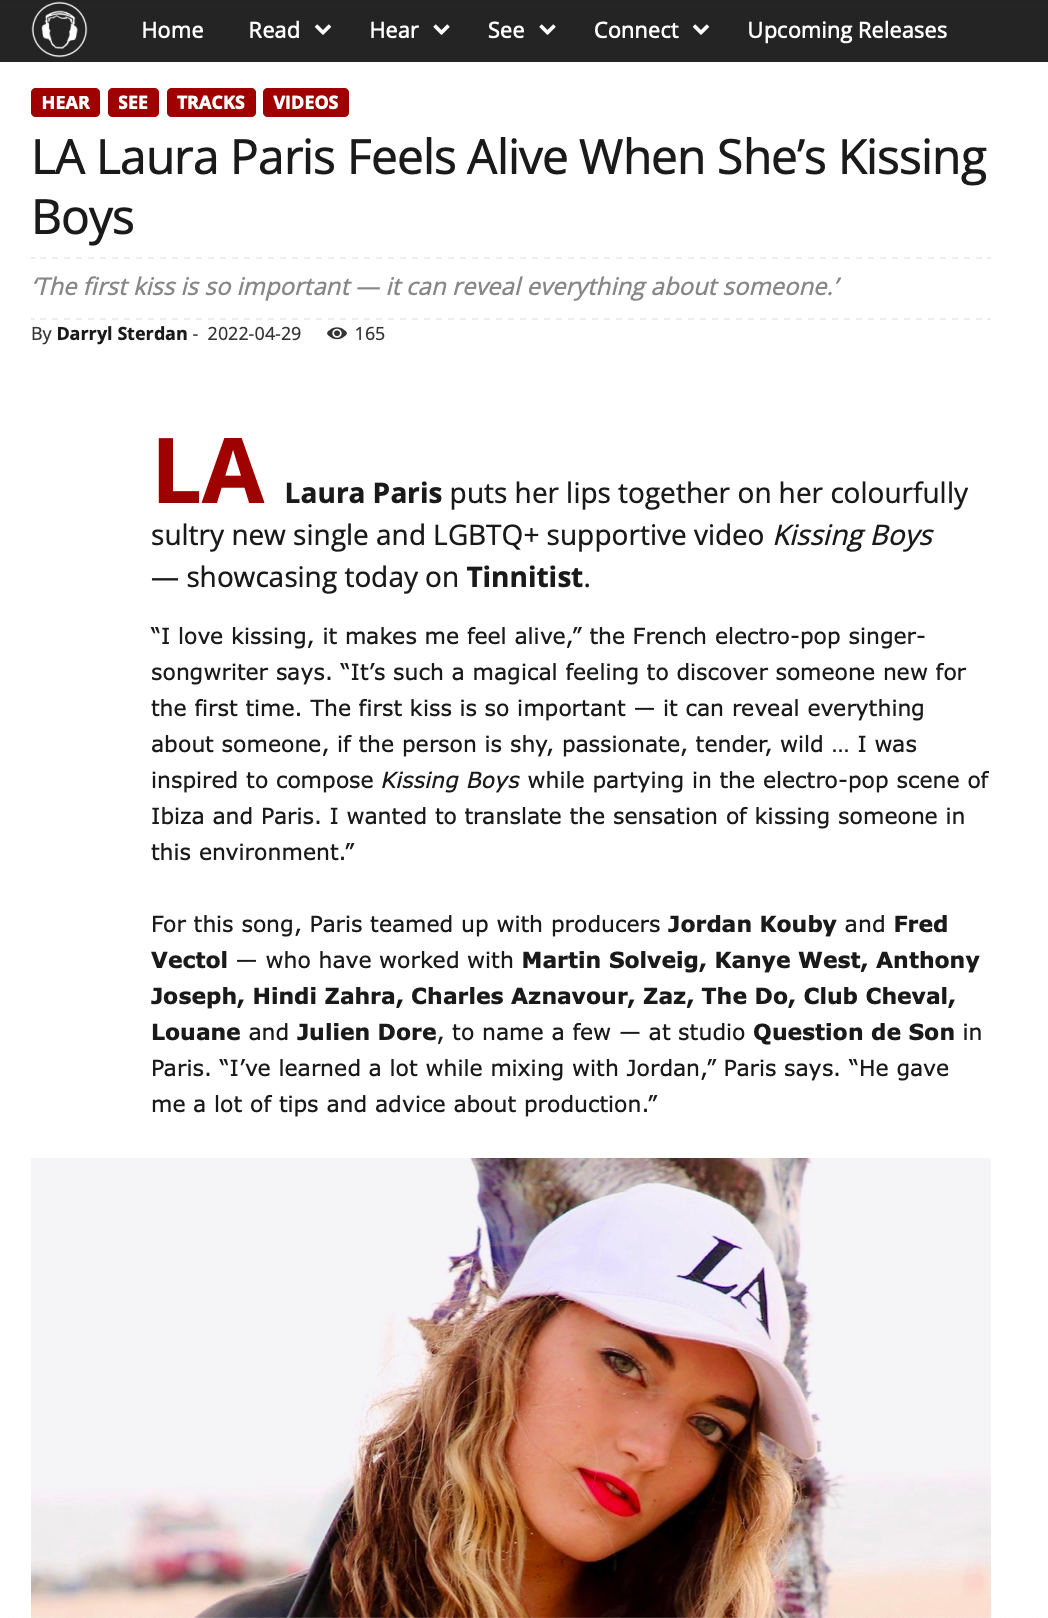 LA Laura Paris Press